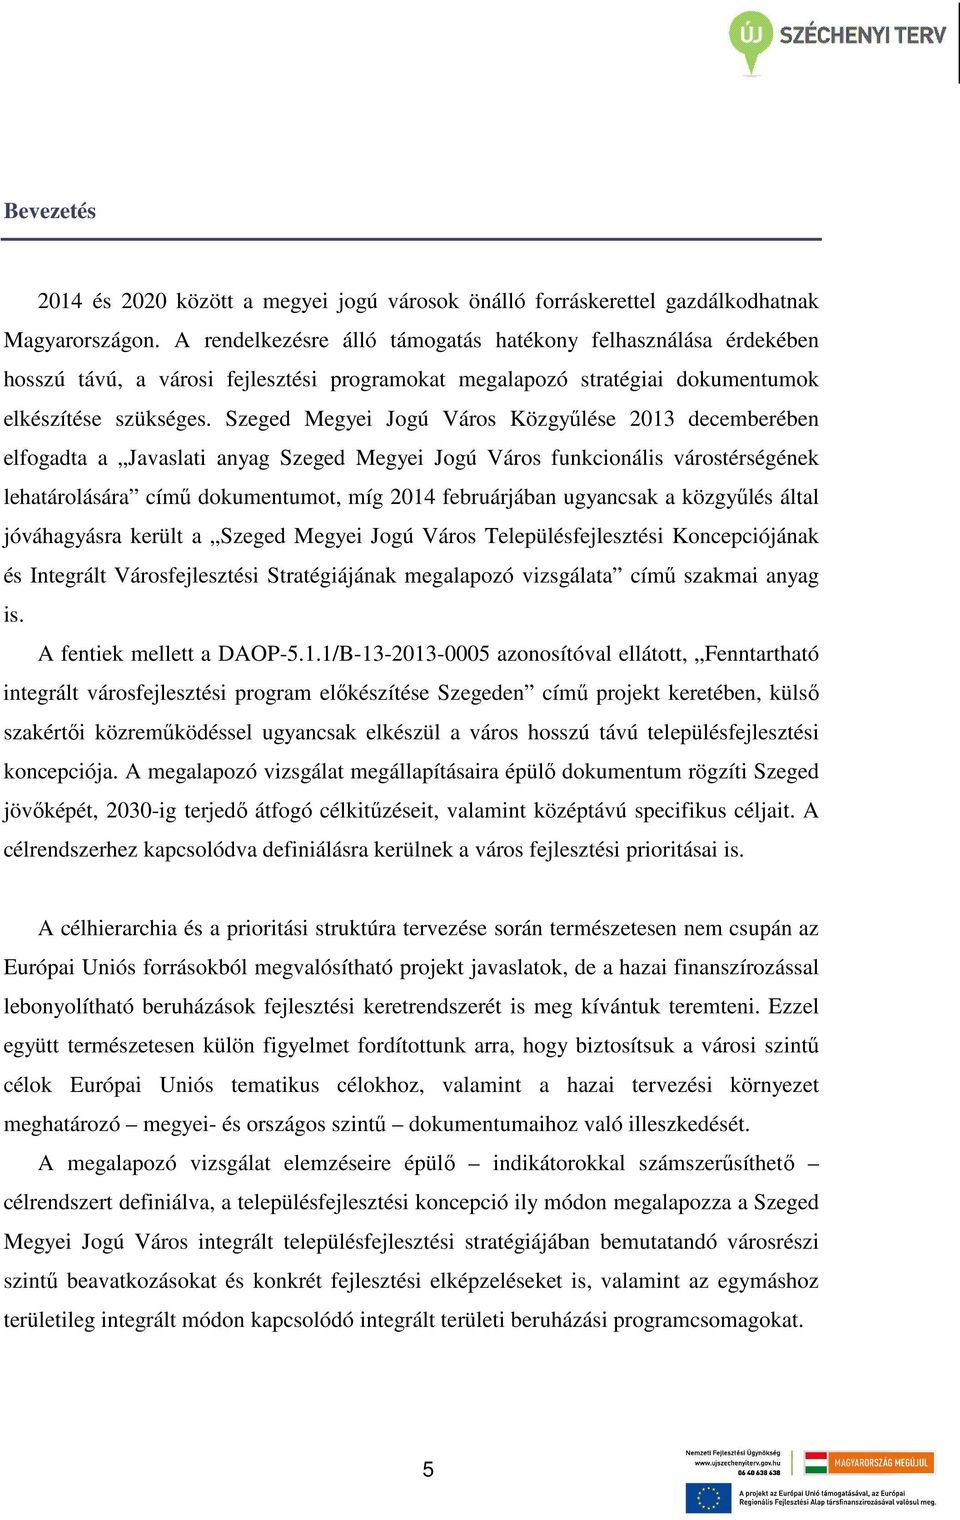 Szeged Megyei Jogú Város Közgyűlése 2013 decemberében elfogadta a Javaslati anyag Szeged Megyei Jogú Város funkcionális várostérségének lehatárolására című dokumentumot, míg 2014 februárjában